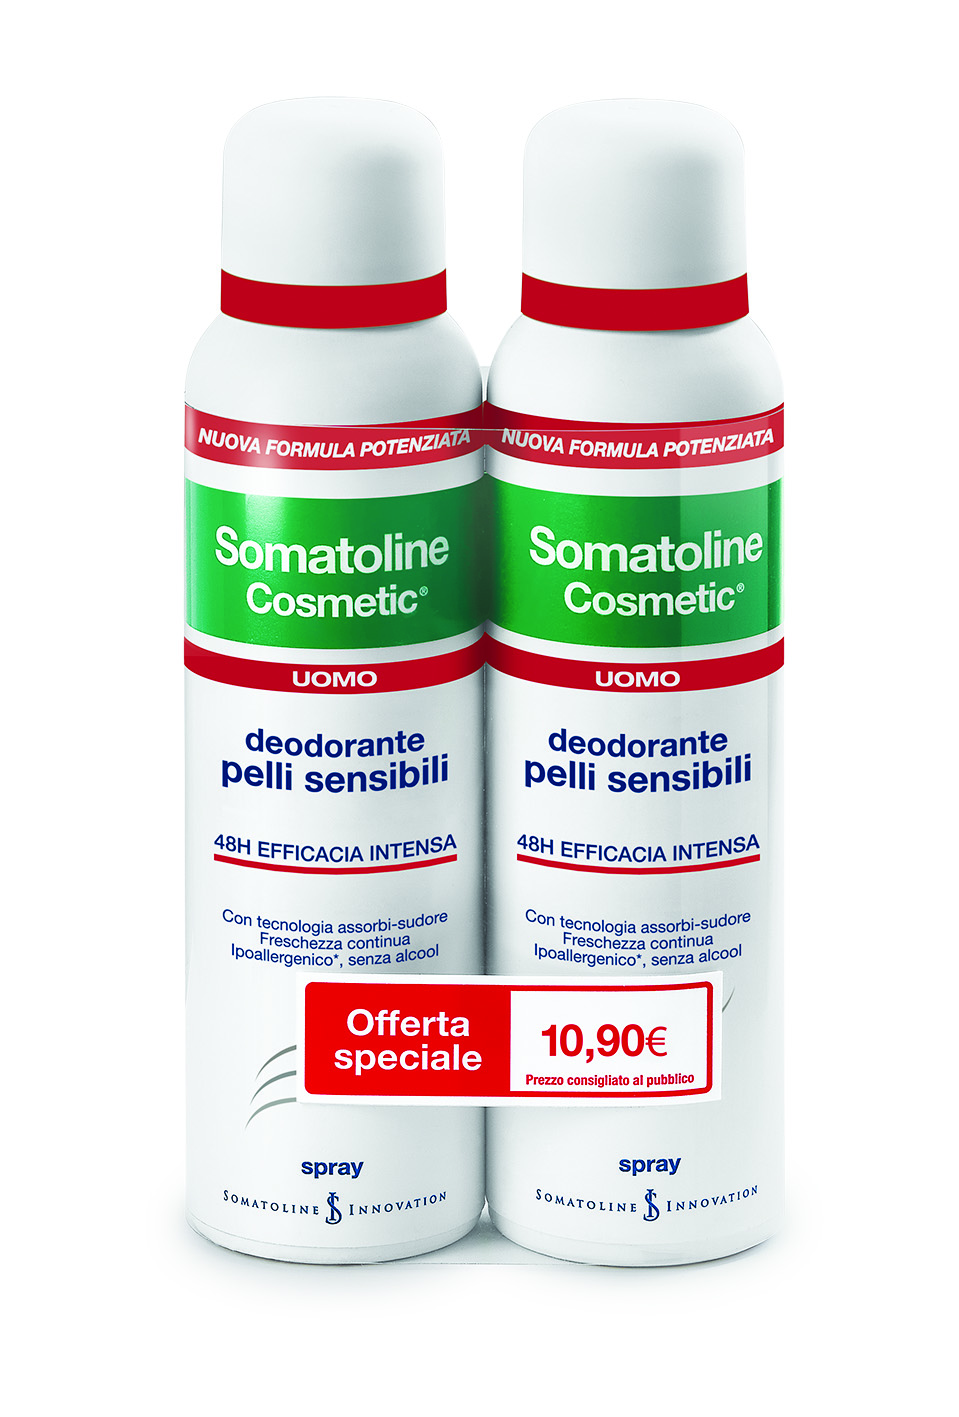 Somatoline Cosmetic Deodorante Uomo Pelli Sensibili Duo 2x150ml